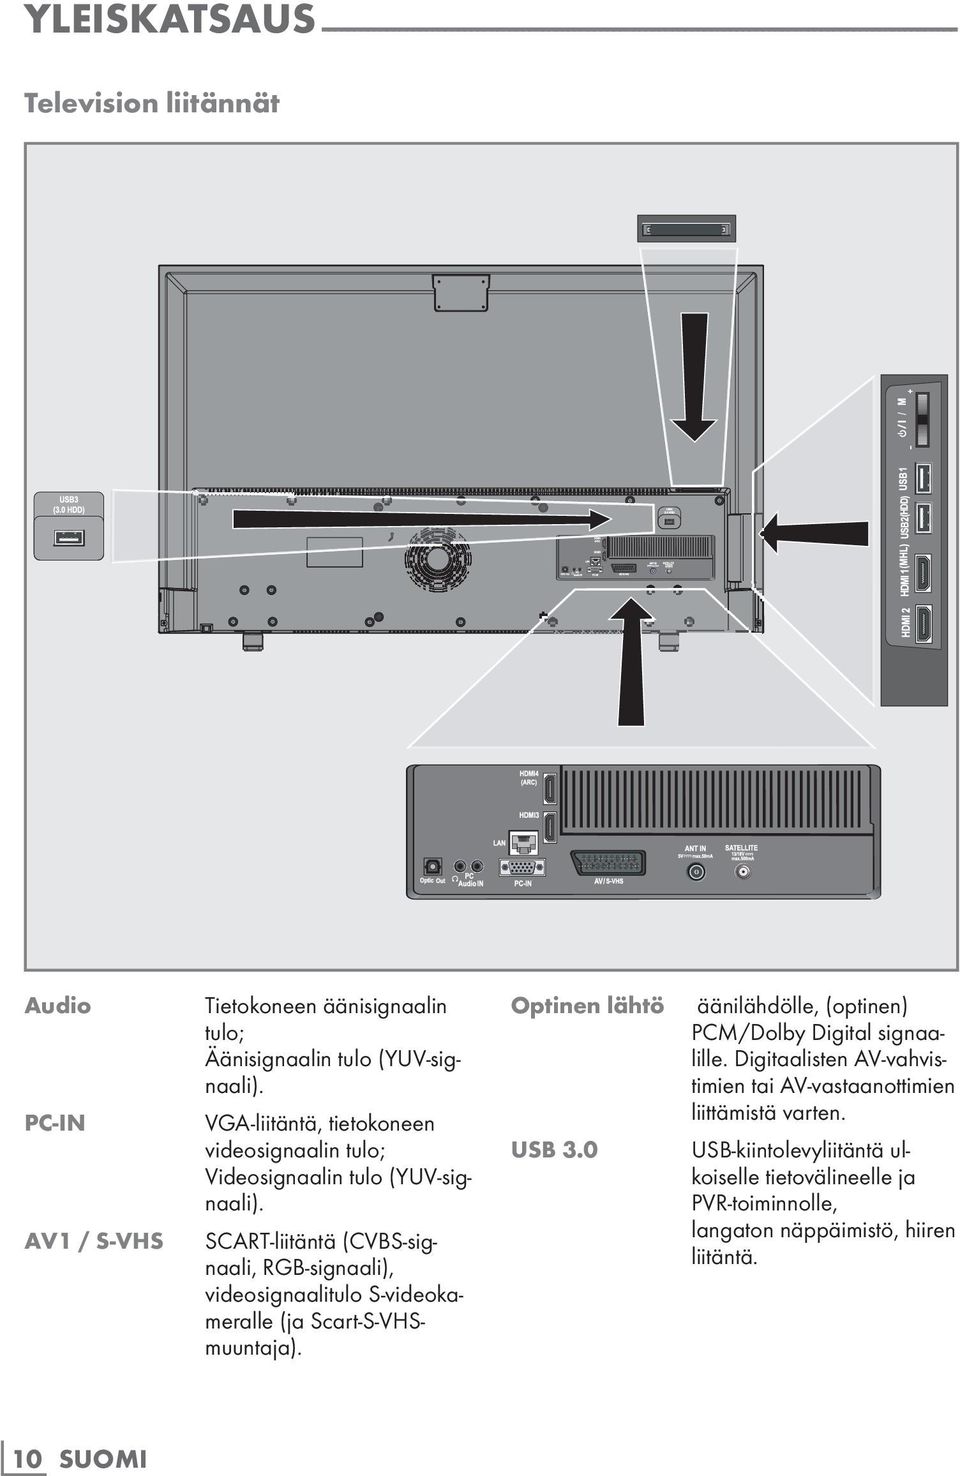 SCART-liitäntä (CVBS-signaali, RGB-signaali), videosignaalitulo S-videokameralle (ja Scart-S-VHSmuuntaja). optinen lähtö usb 3.